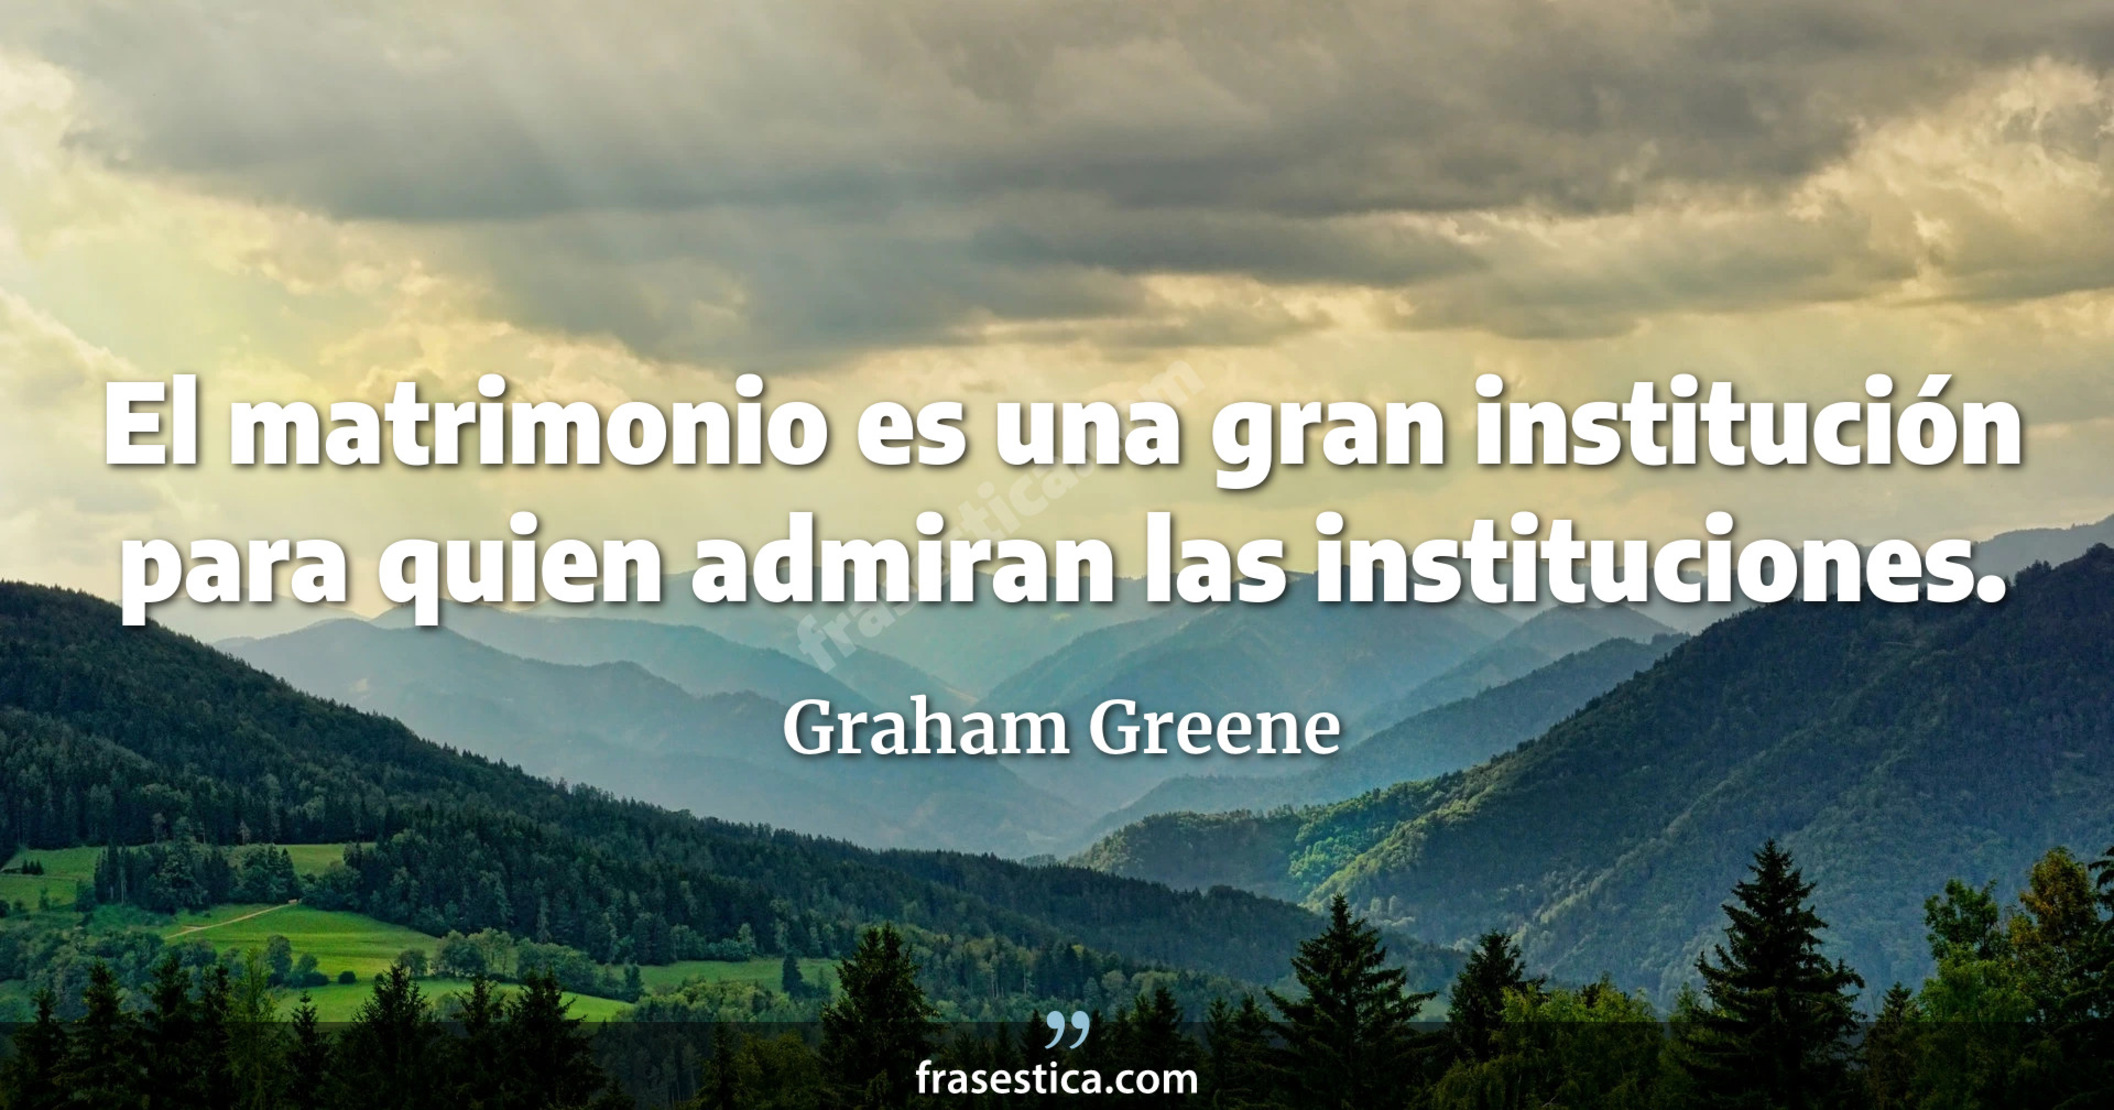 El matrimonio es una gran institución para quien admiran las instituciones.  - Graham Greene